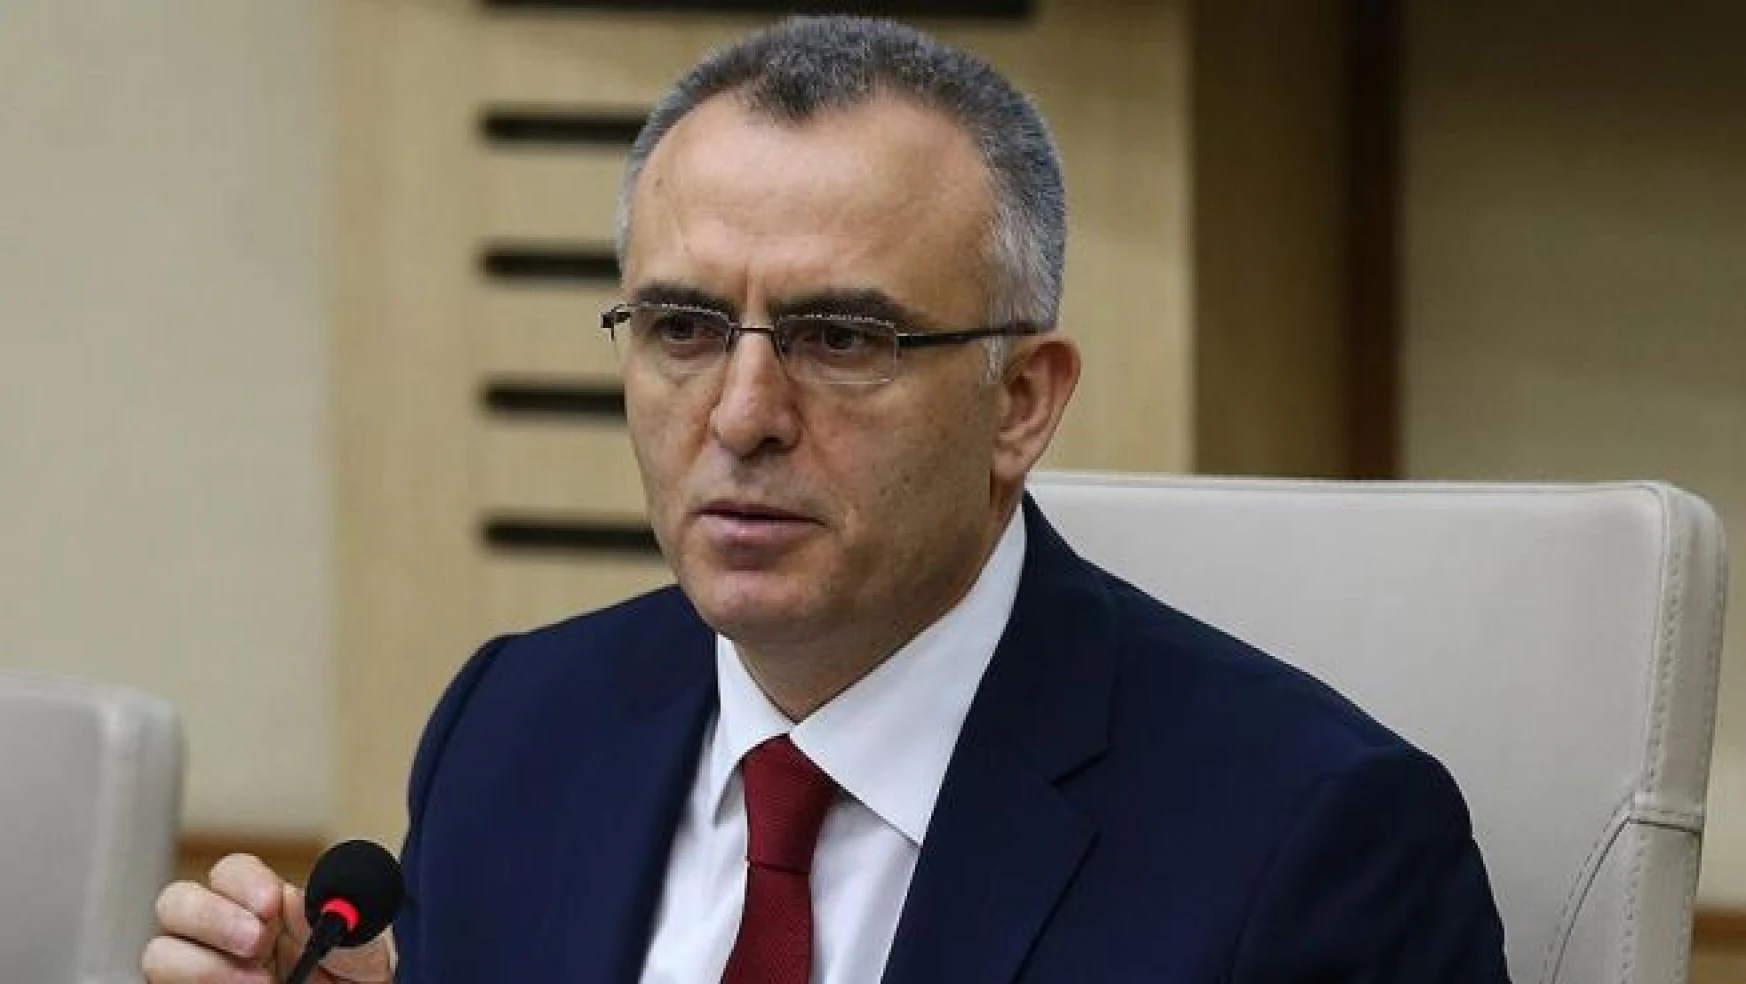 Maliye Bakanı Ağbal AA Editör Masası'na konuk olacak